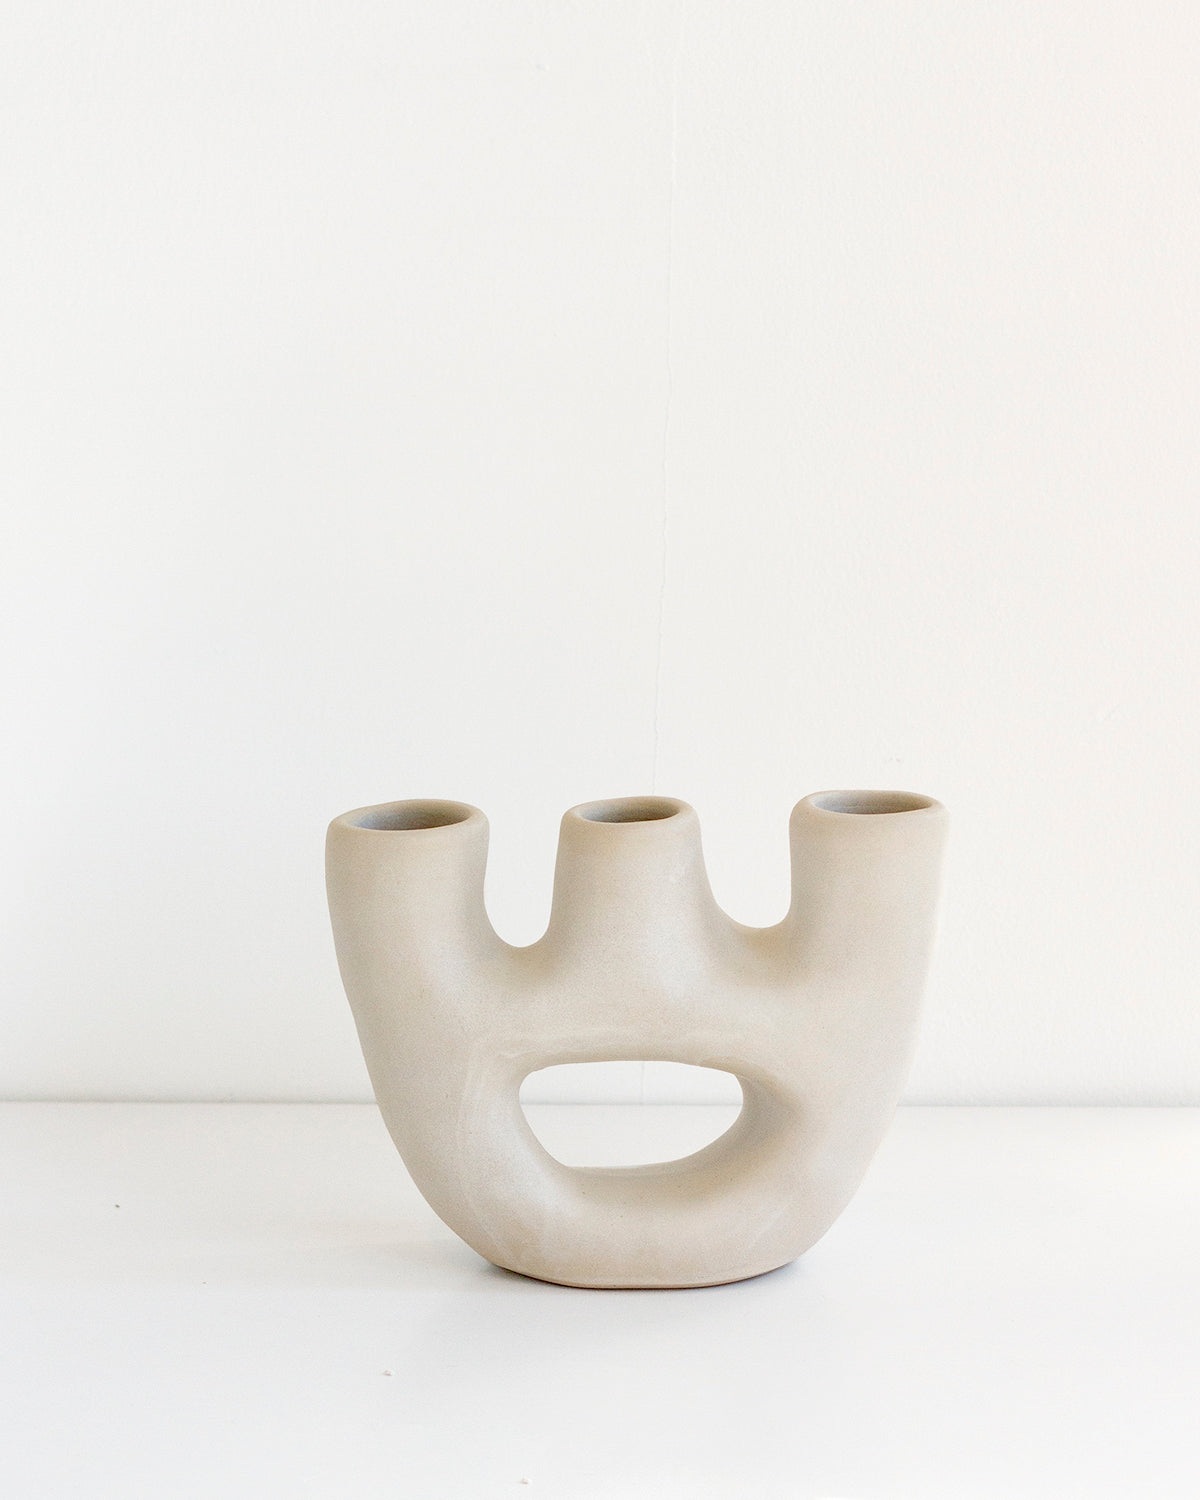 Gravity Clay Vase - Bone White